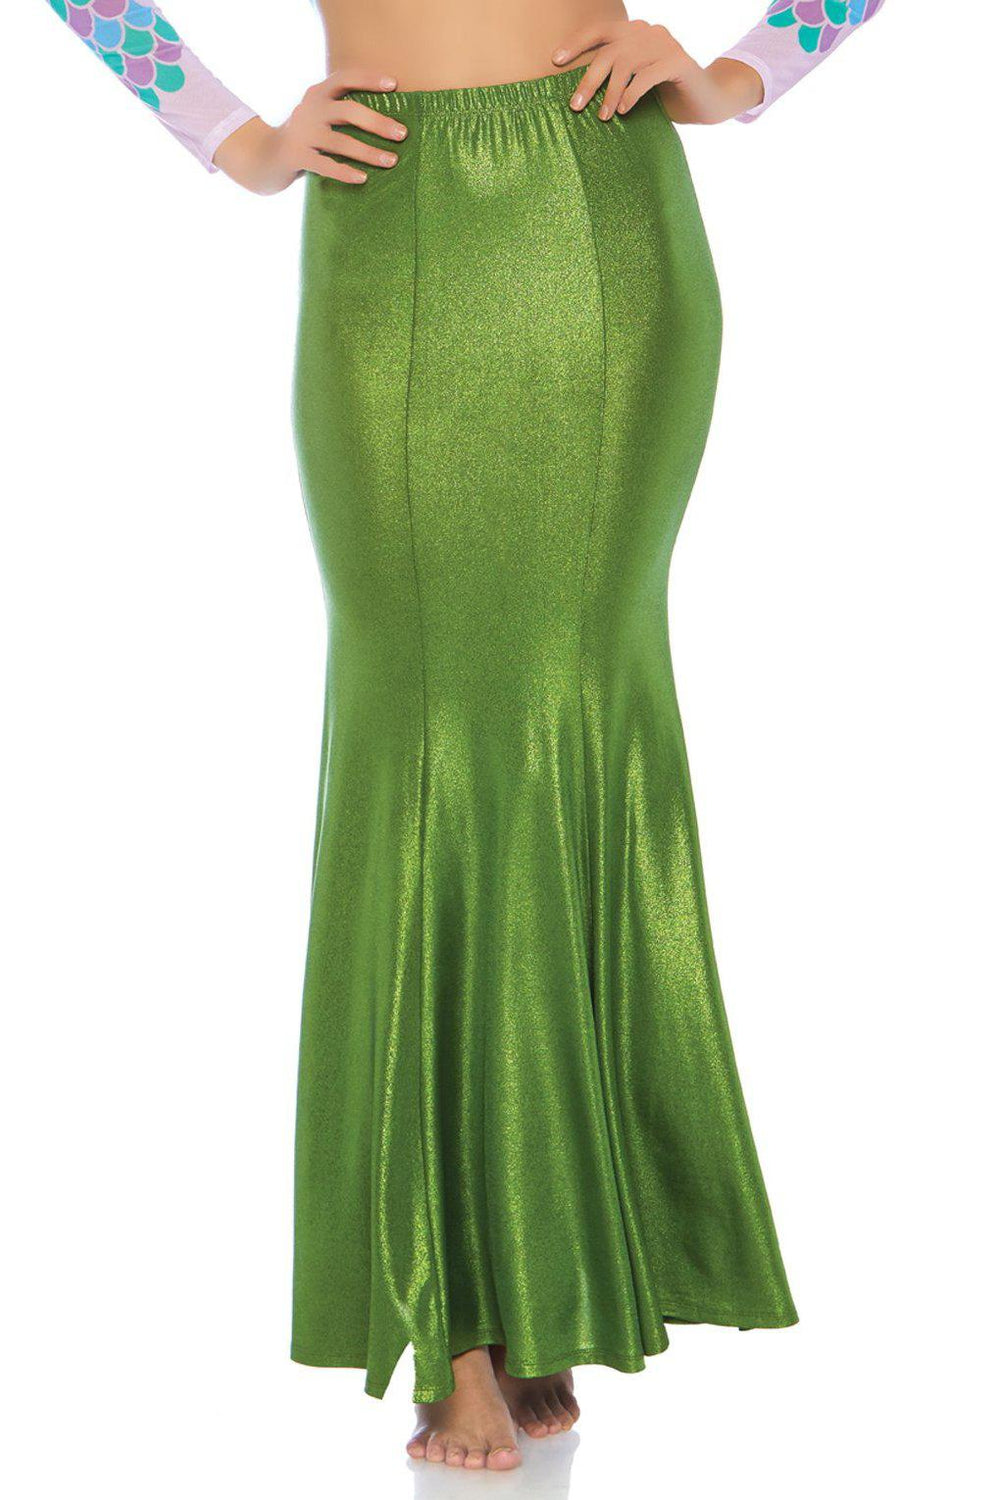 Shimmer Spandex Mermaid Skirt-Mermaid Costumes-Leg Avenue-Green-S/M-SEXYSHOES.COM